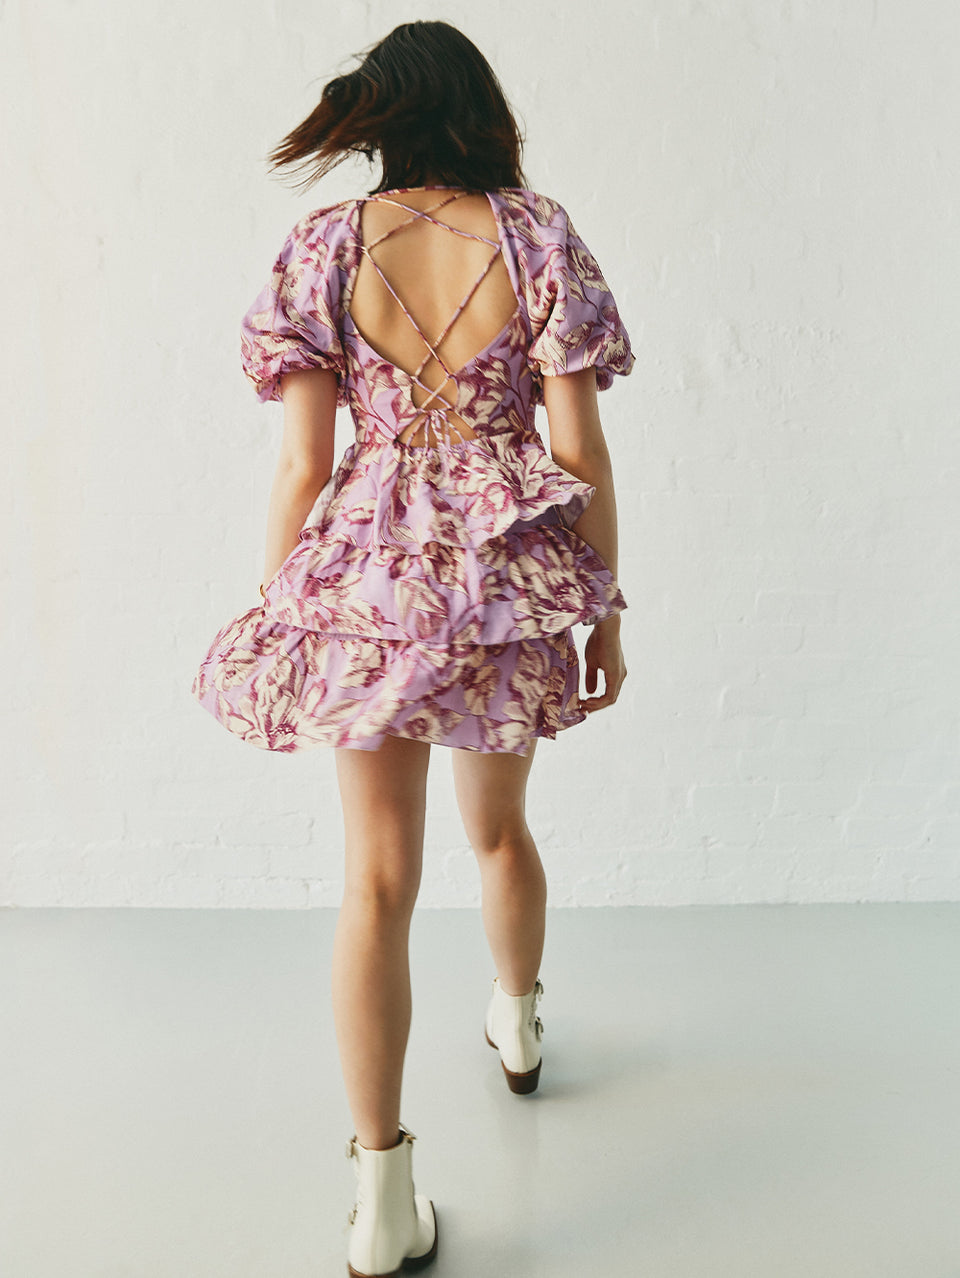 Reyna Mini Dress KIVARI | Model wears purple floral mini dress campaign